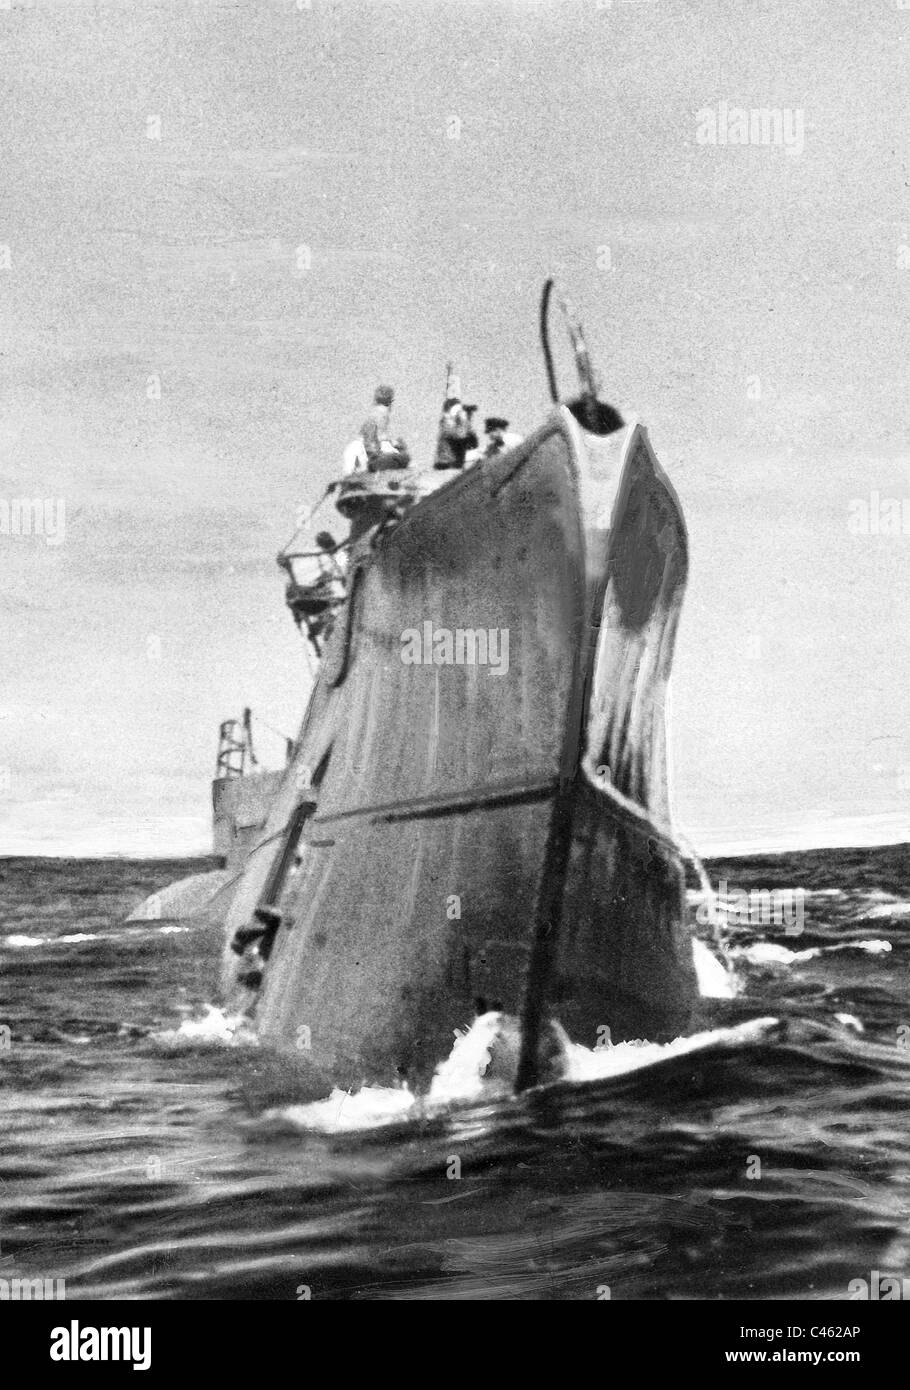 U-boat allemand durant la Seconde Guerre mondiale Banque D'Images